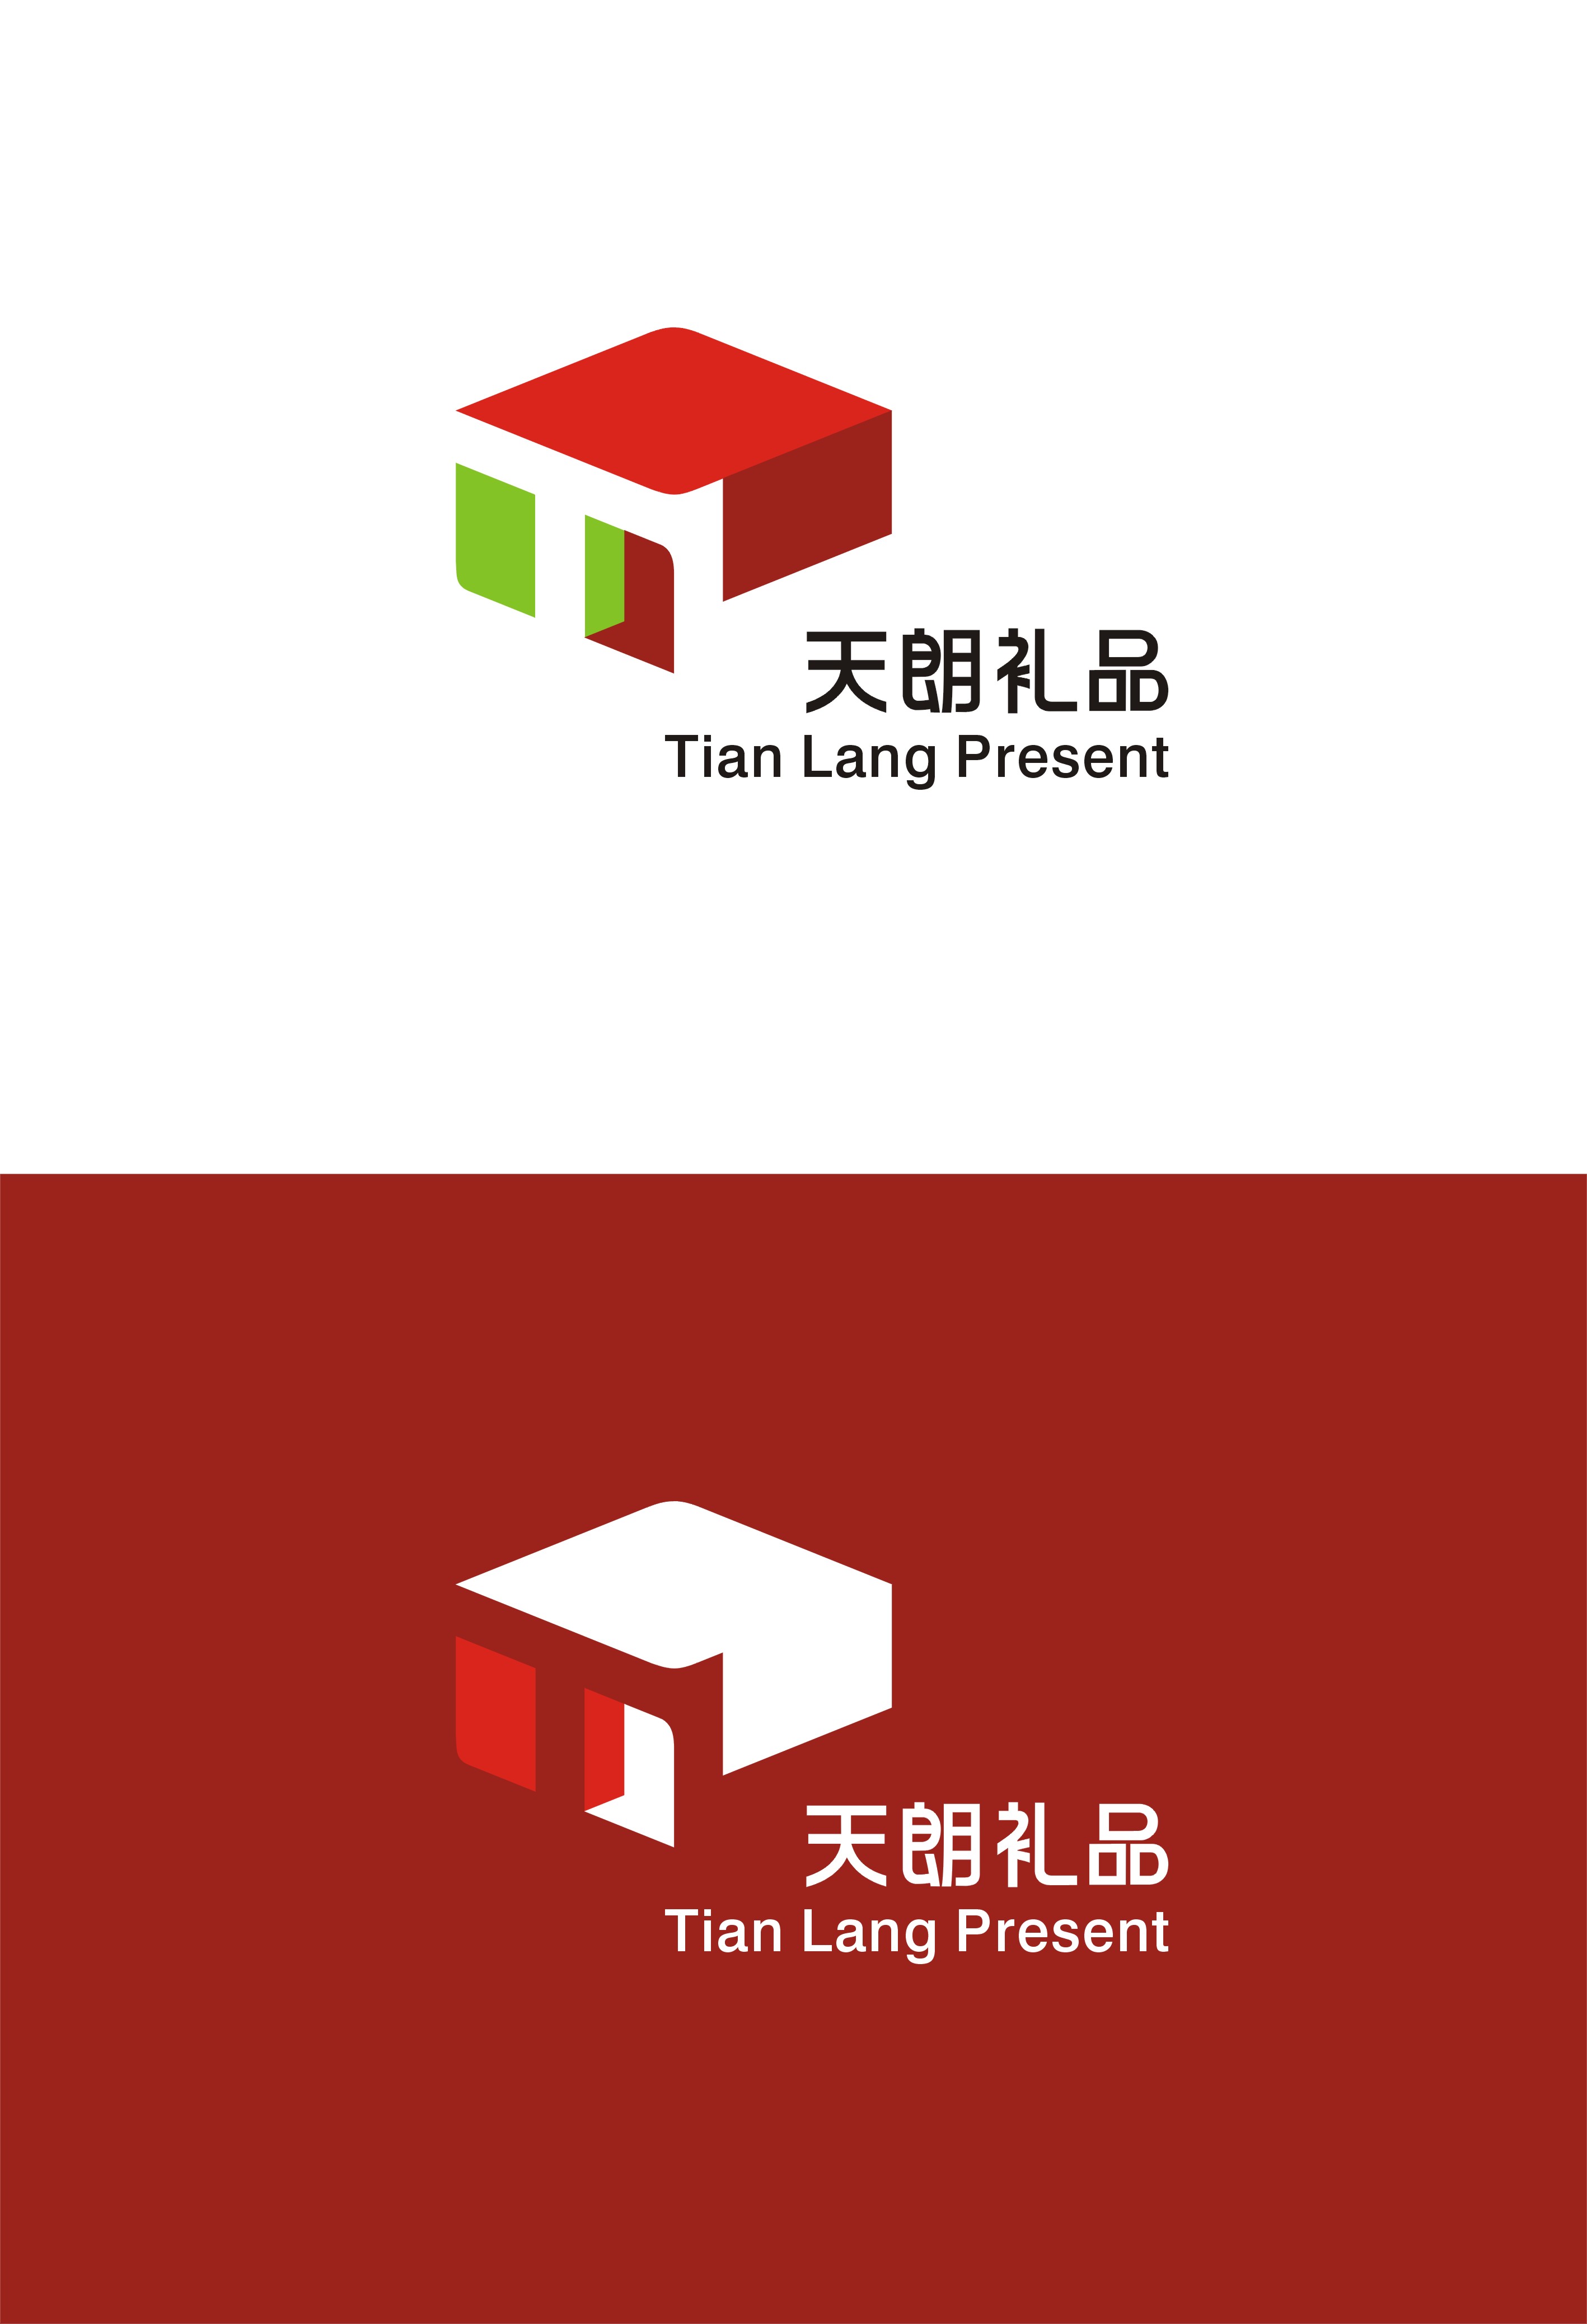 天朗礼品公司logo及名片设计